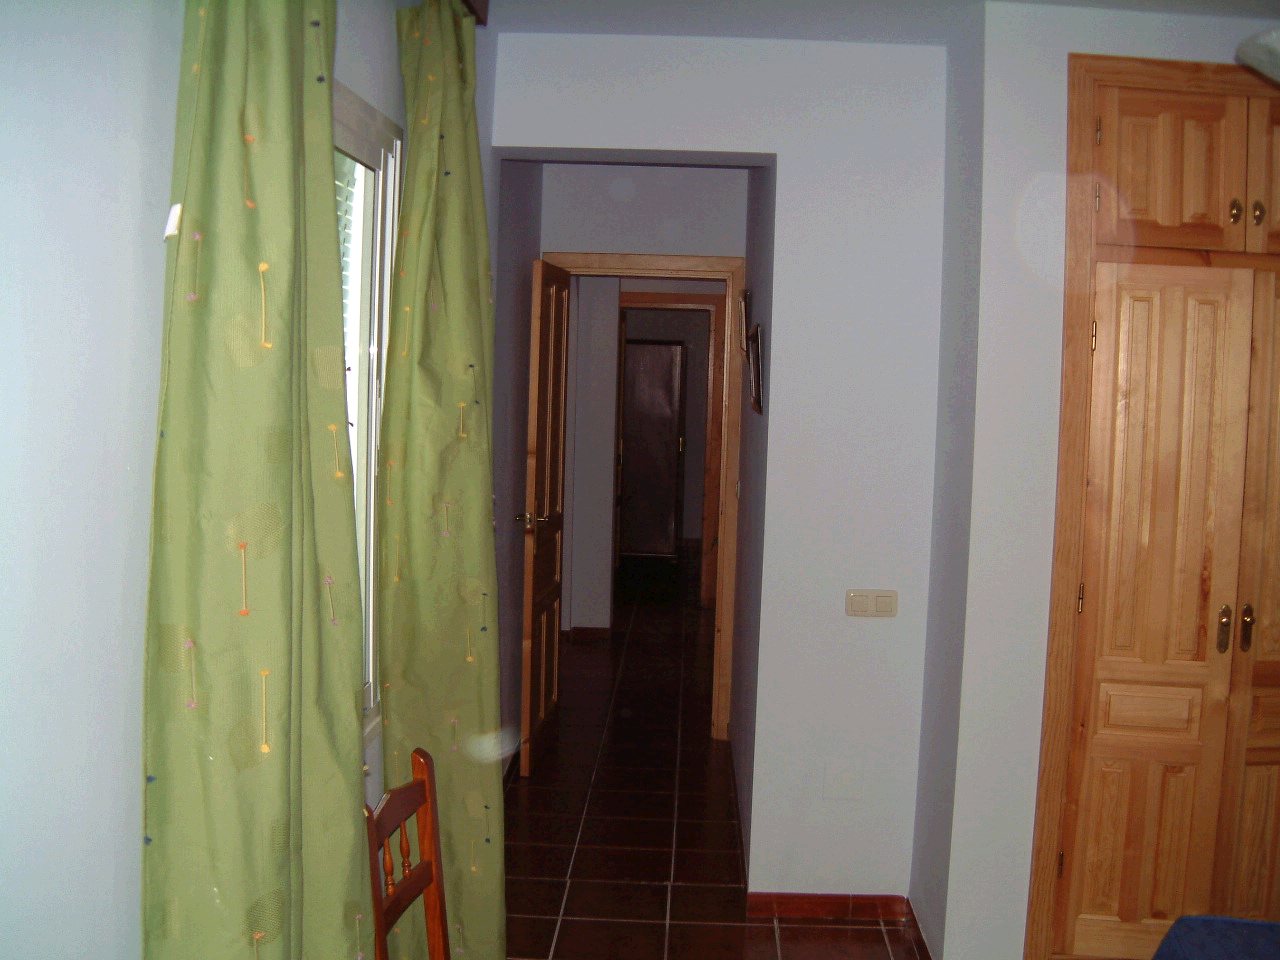 Hallway to bedroom 3